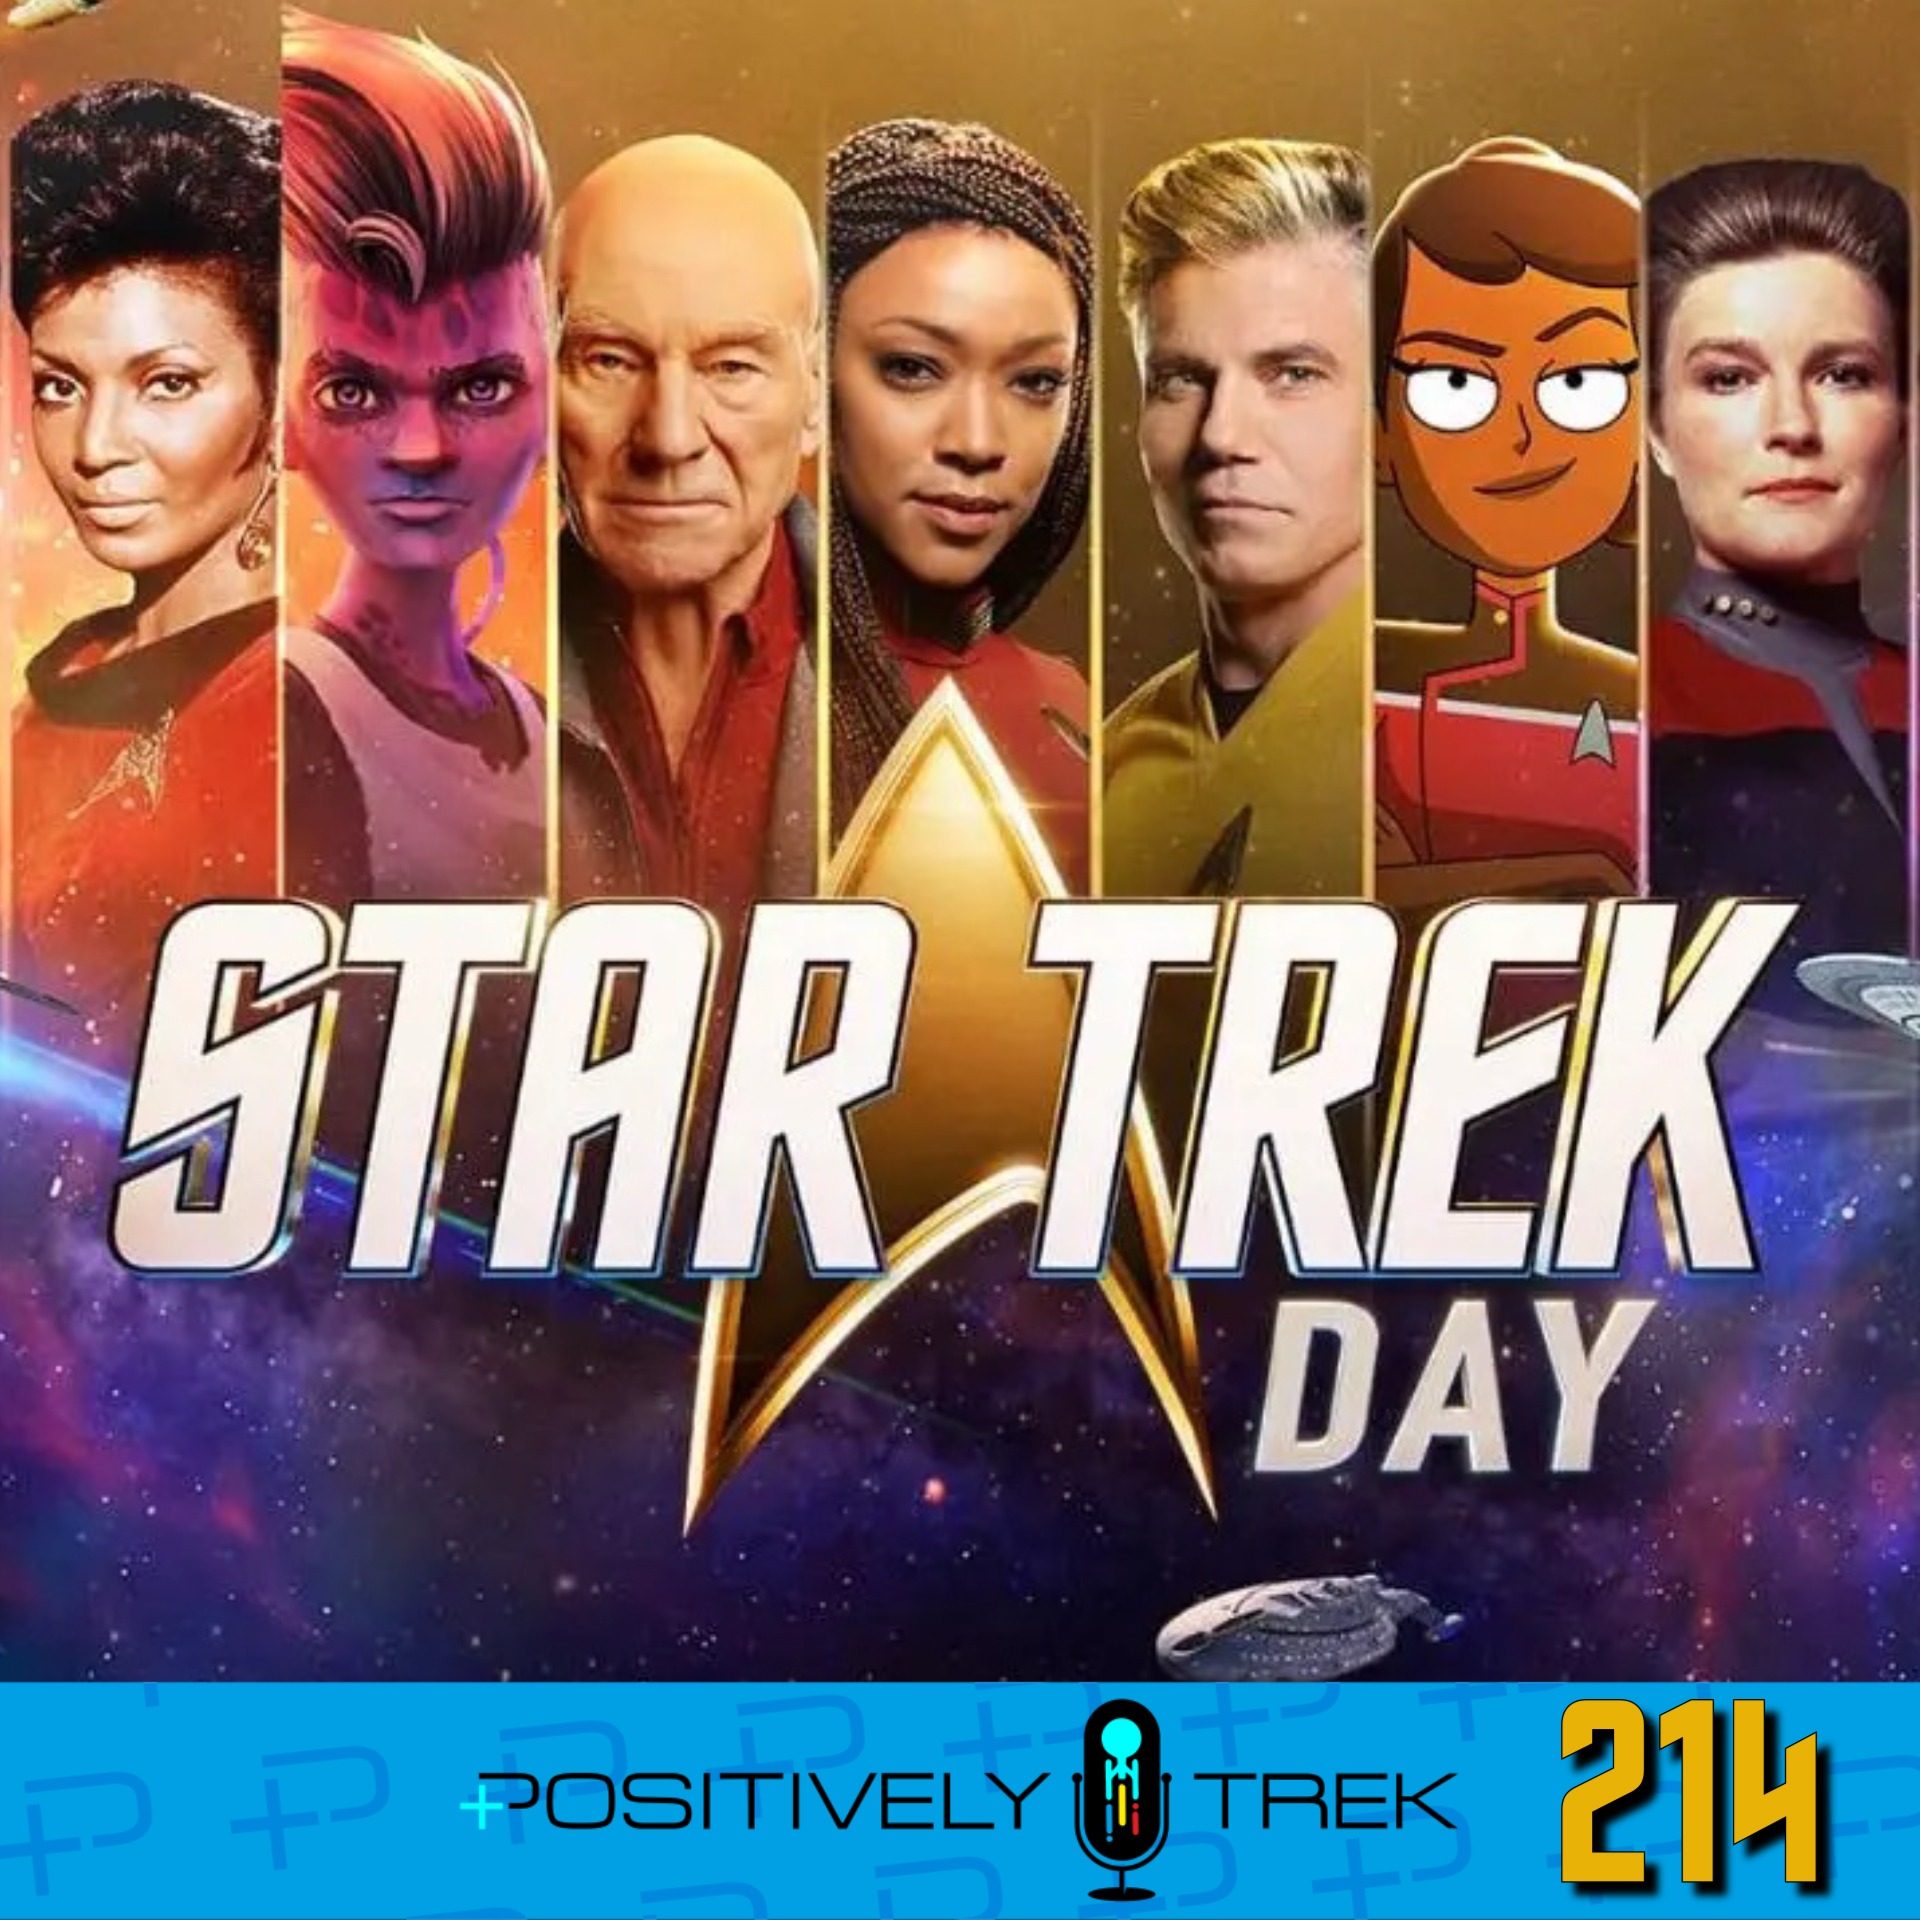 Star Trek Day 2022 Extravaganza!